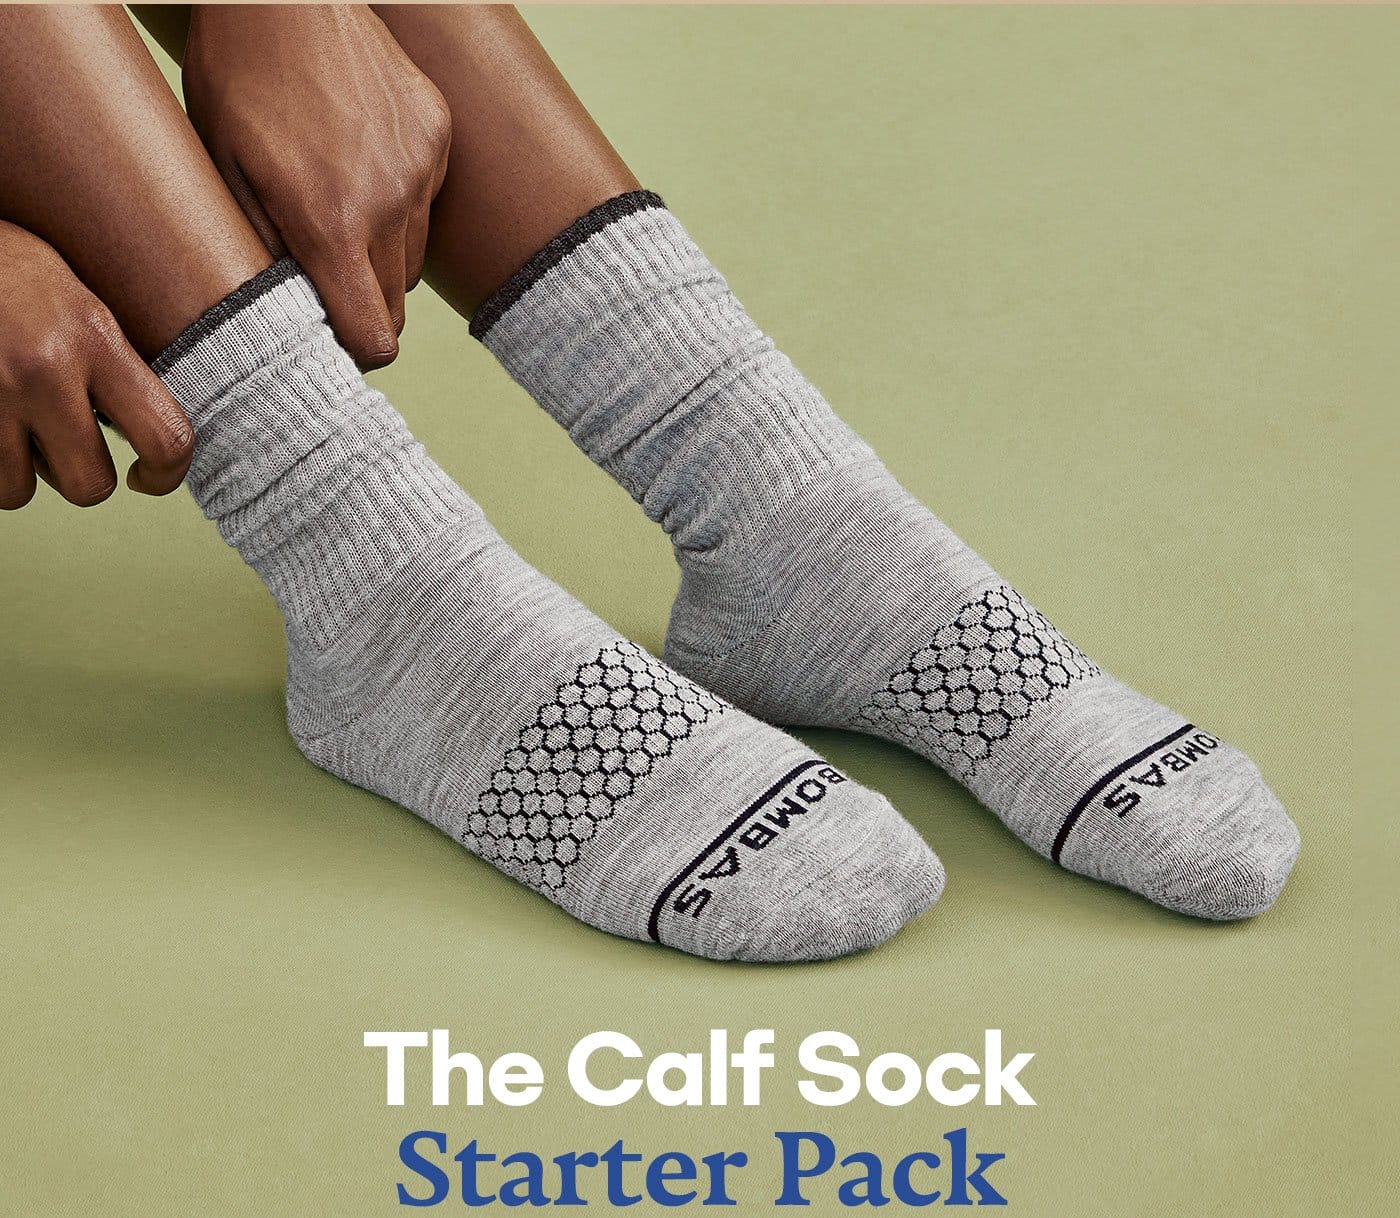 The Calf Sock Starter Pack